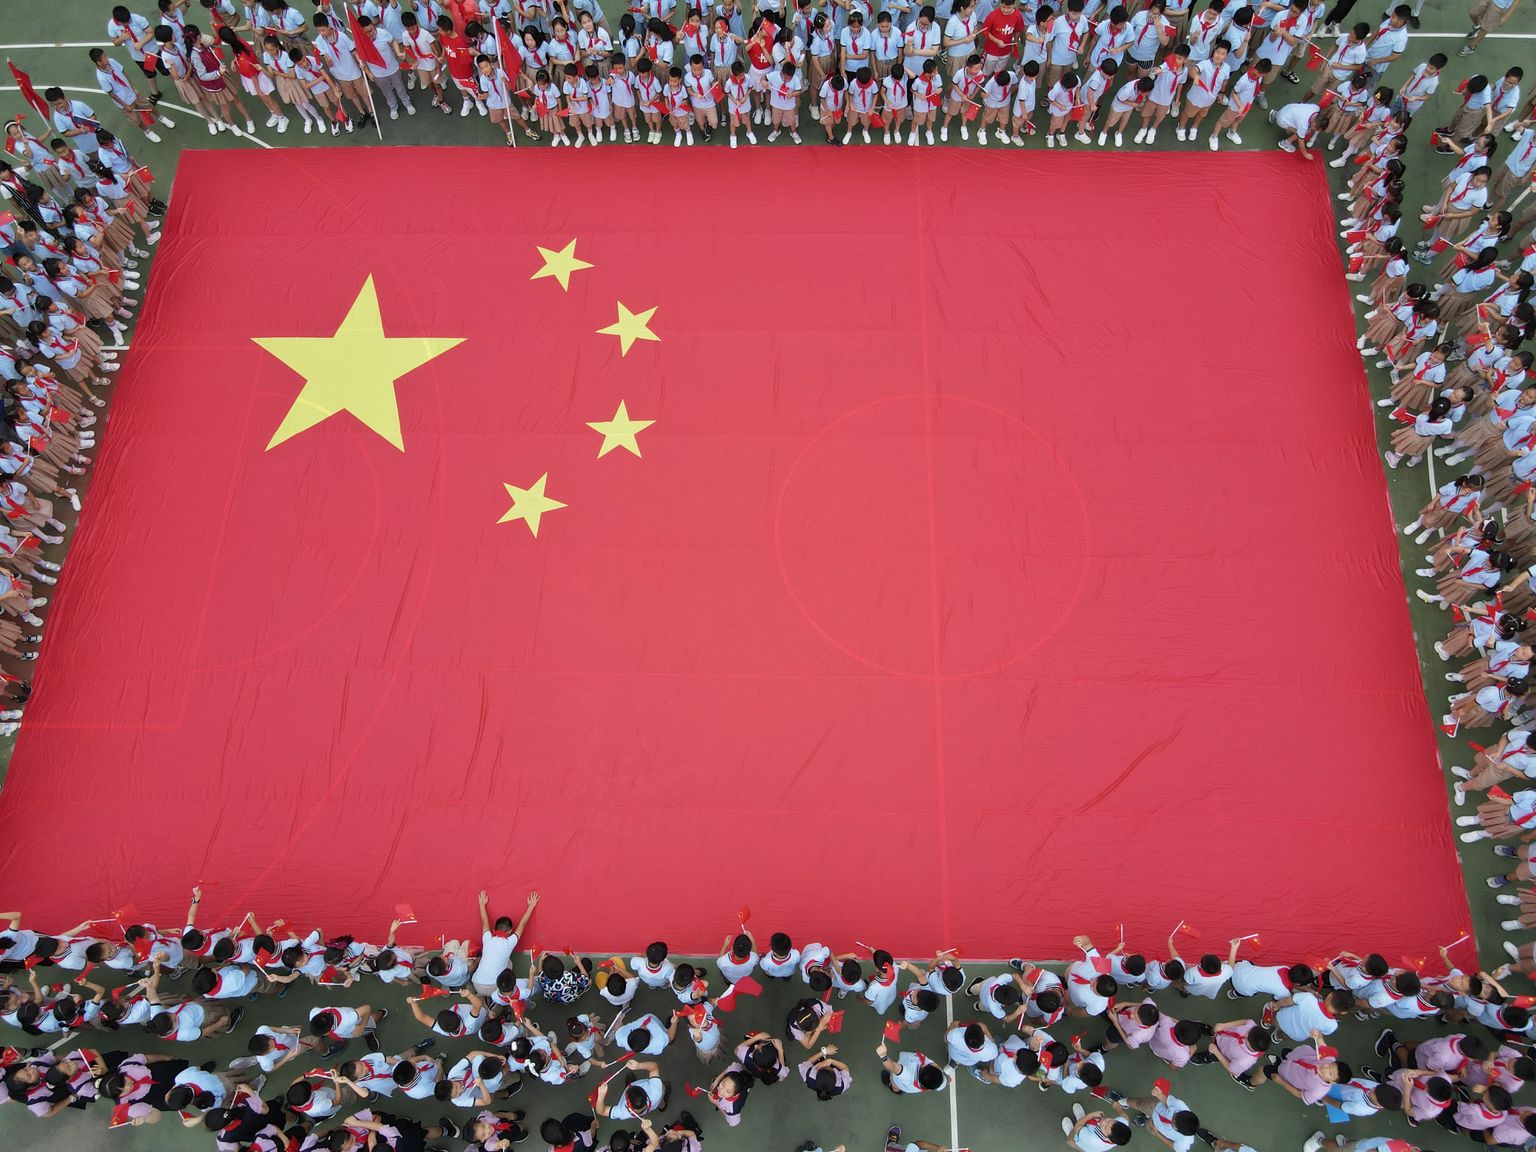 Hiina on sel aastal lastele suunatud sisu tsenseerima hakanud. Eilne patriotismi õpetuse tund Xinchengi põhikoolis Hefei linnas.